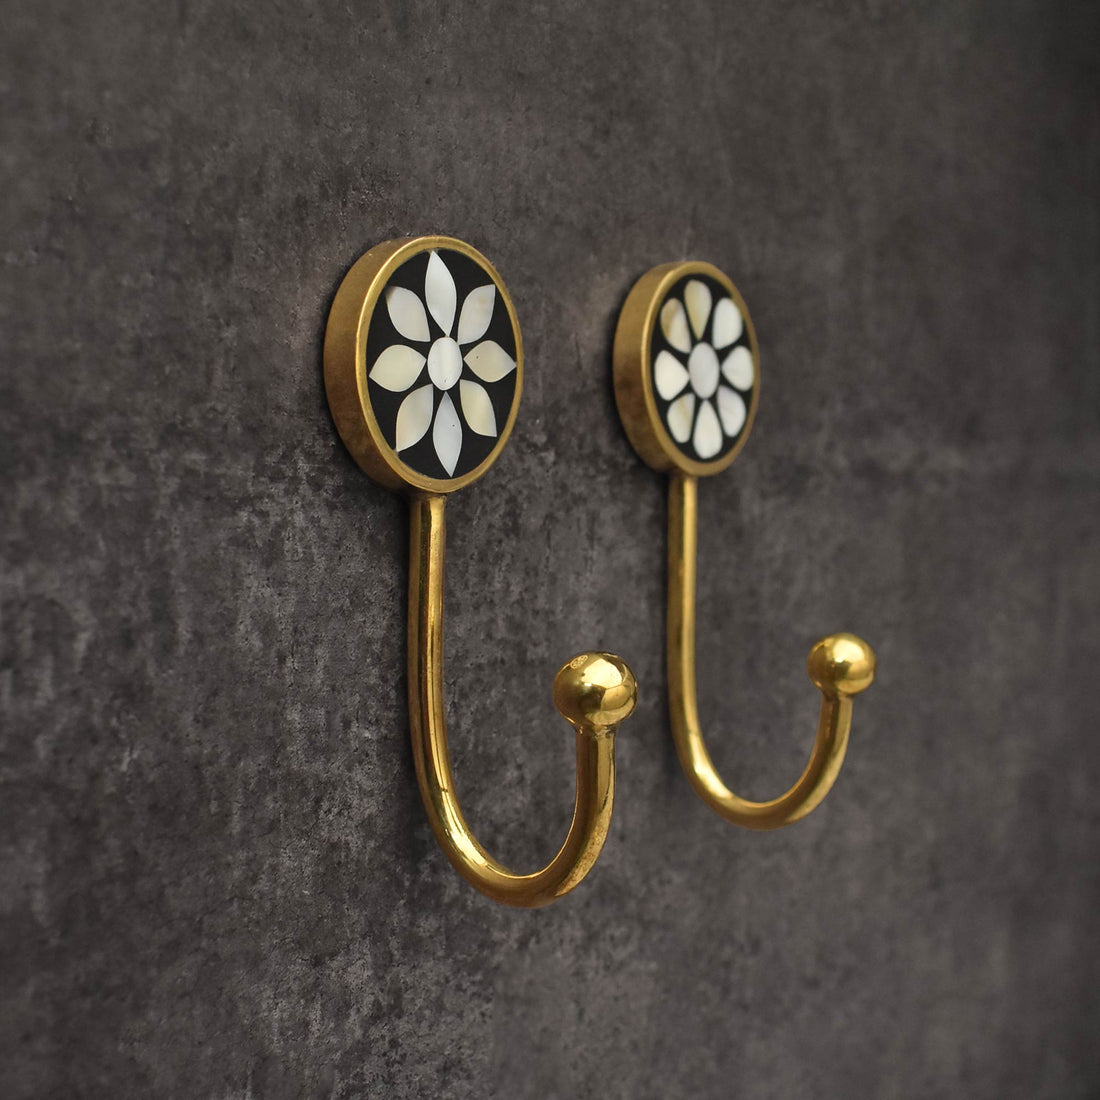 Decorative Brass Coat Hooks Wall Hooks Mother of Pearl Key Hooks Hangers  Wall Mount Towel Hook